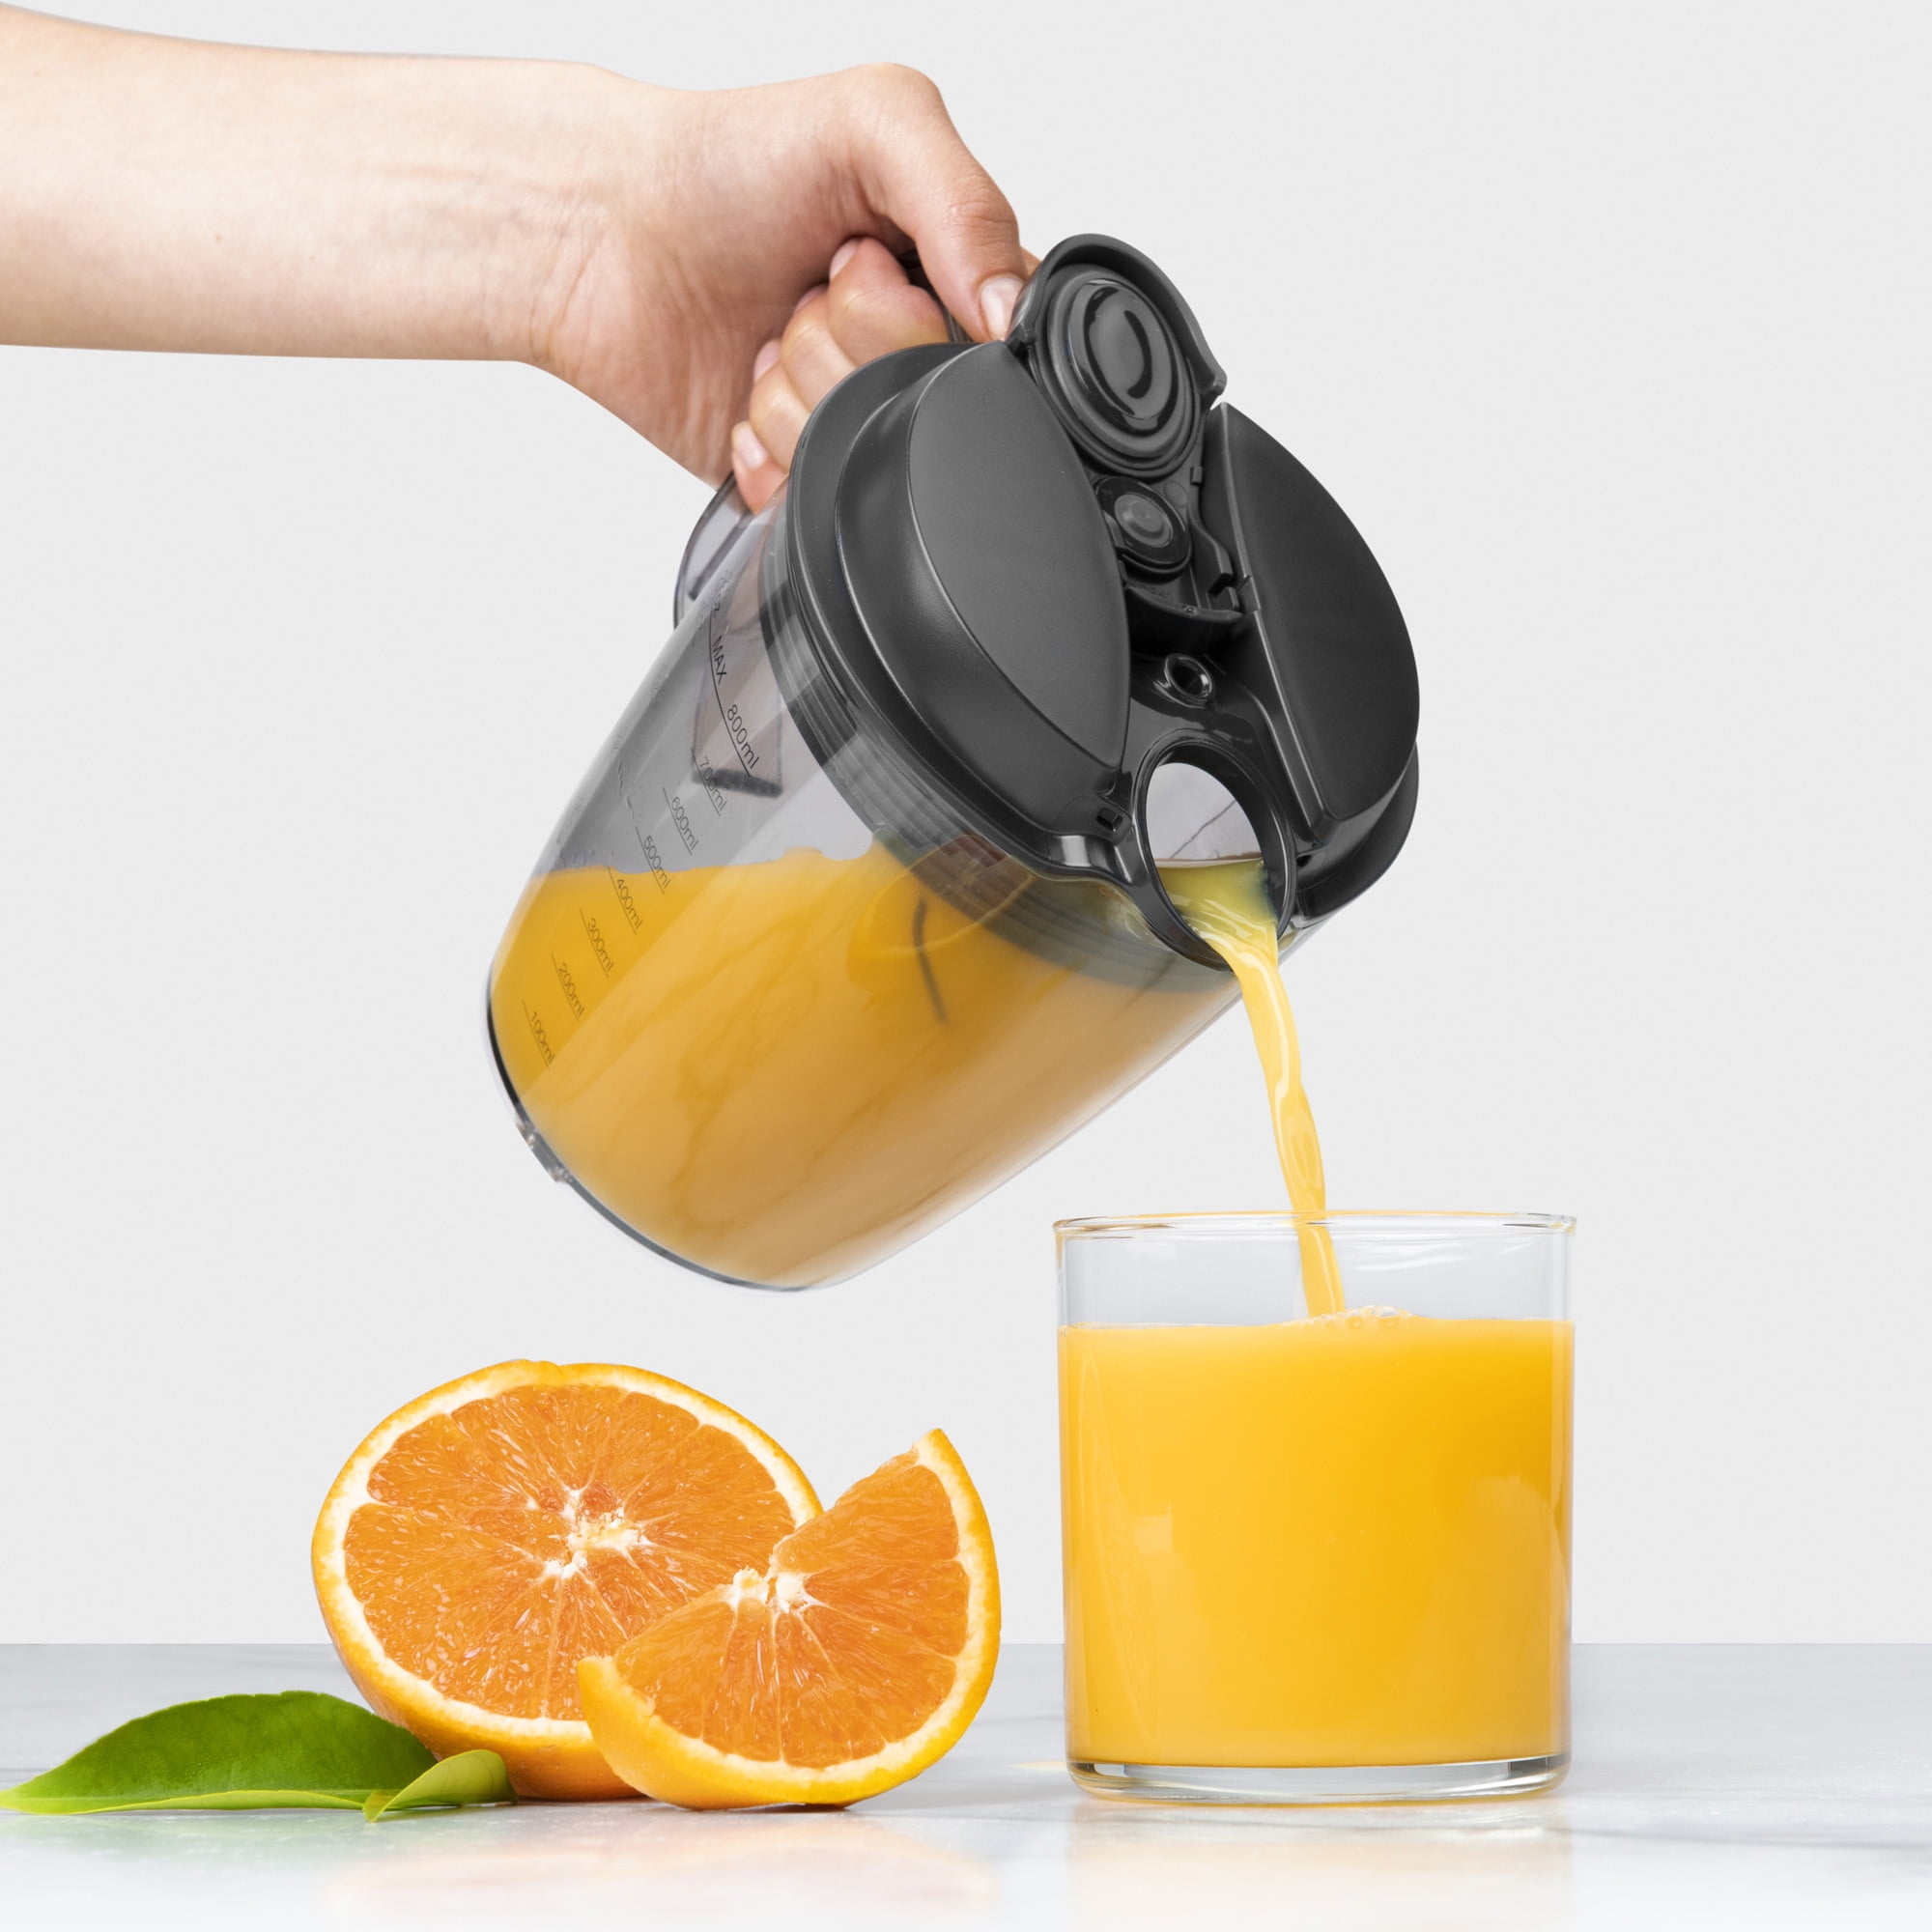 Nutribullet juicer new - appliances - by owner - sale - craigslist